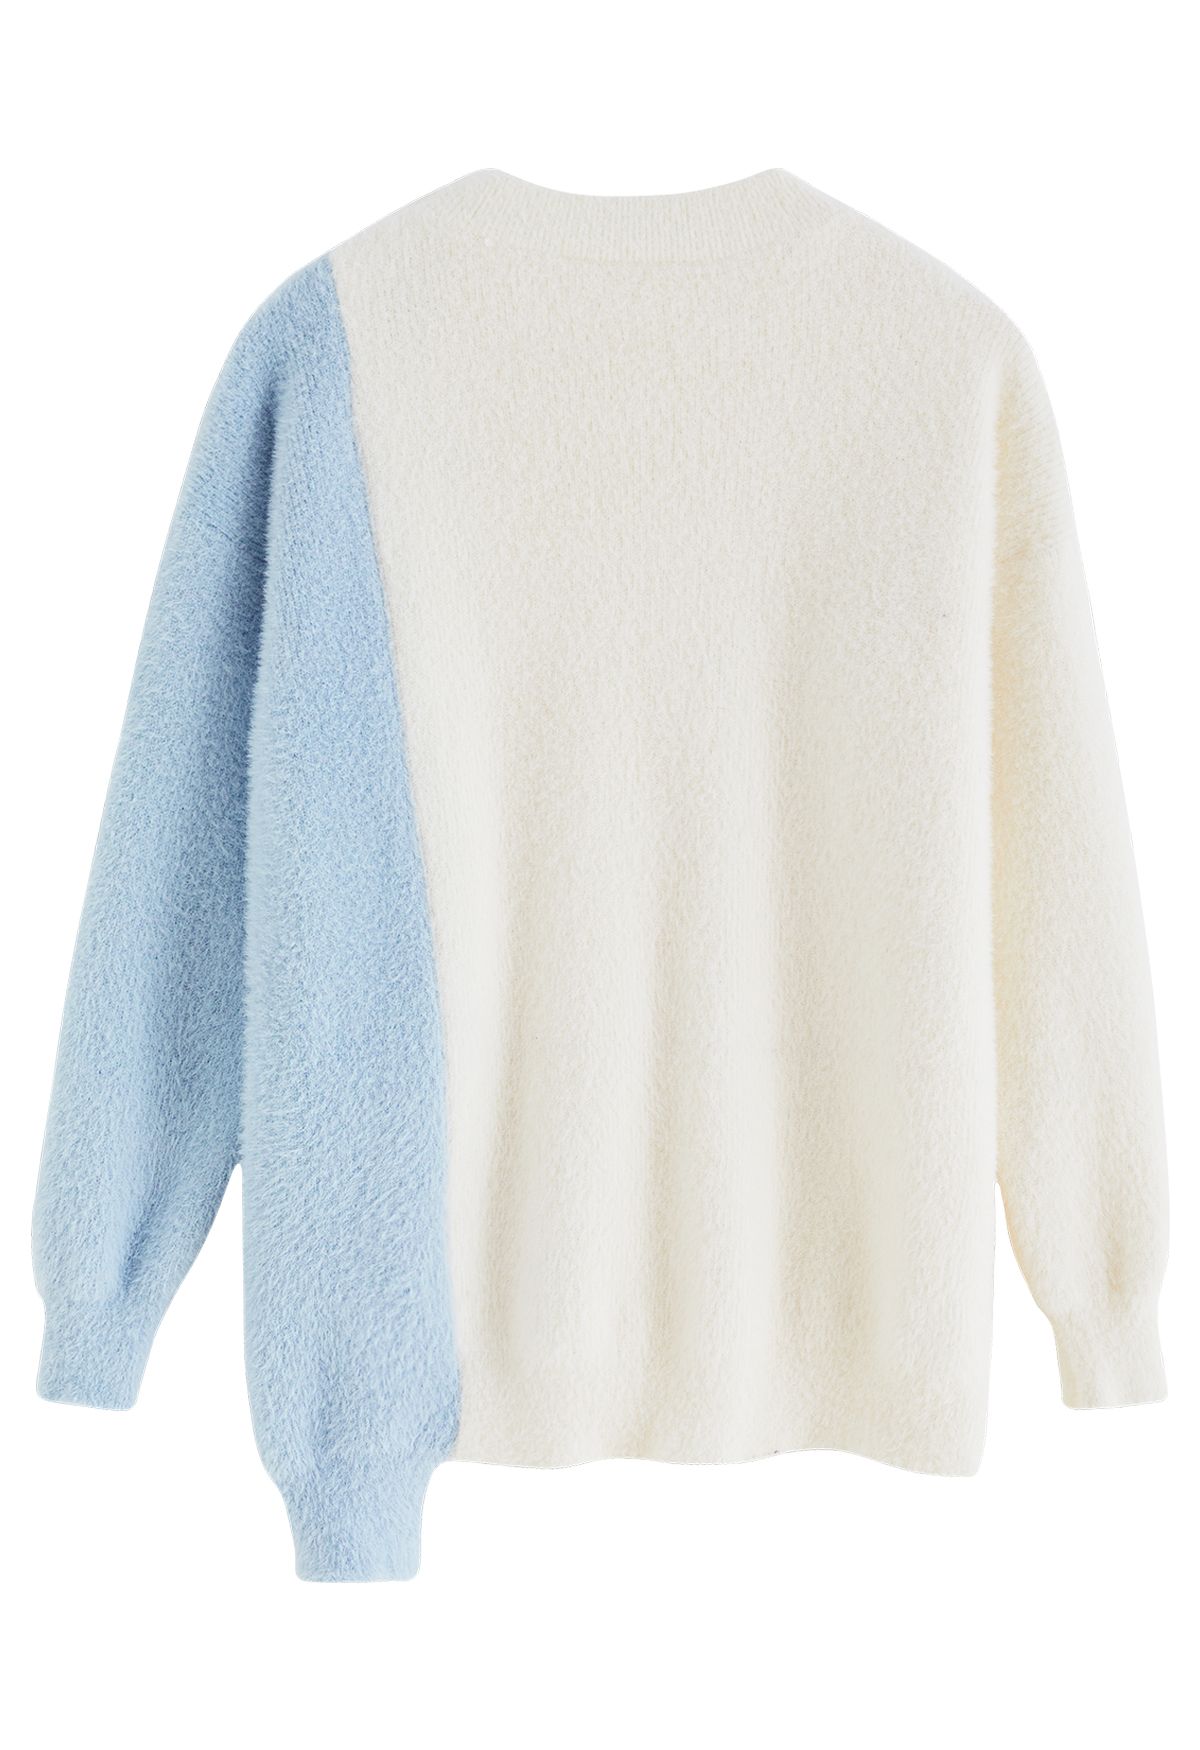 Suéter de punto difuso con dobladillo asimétrico bicolor en crema